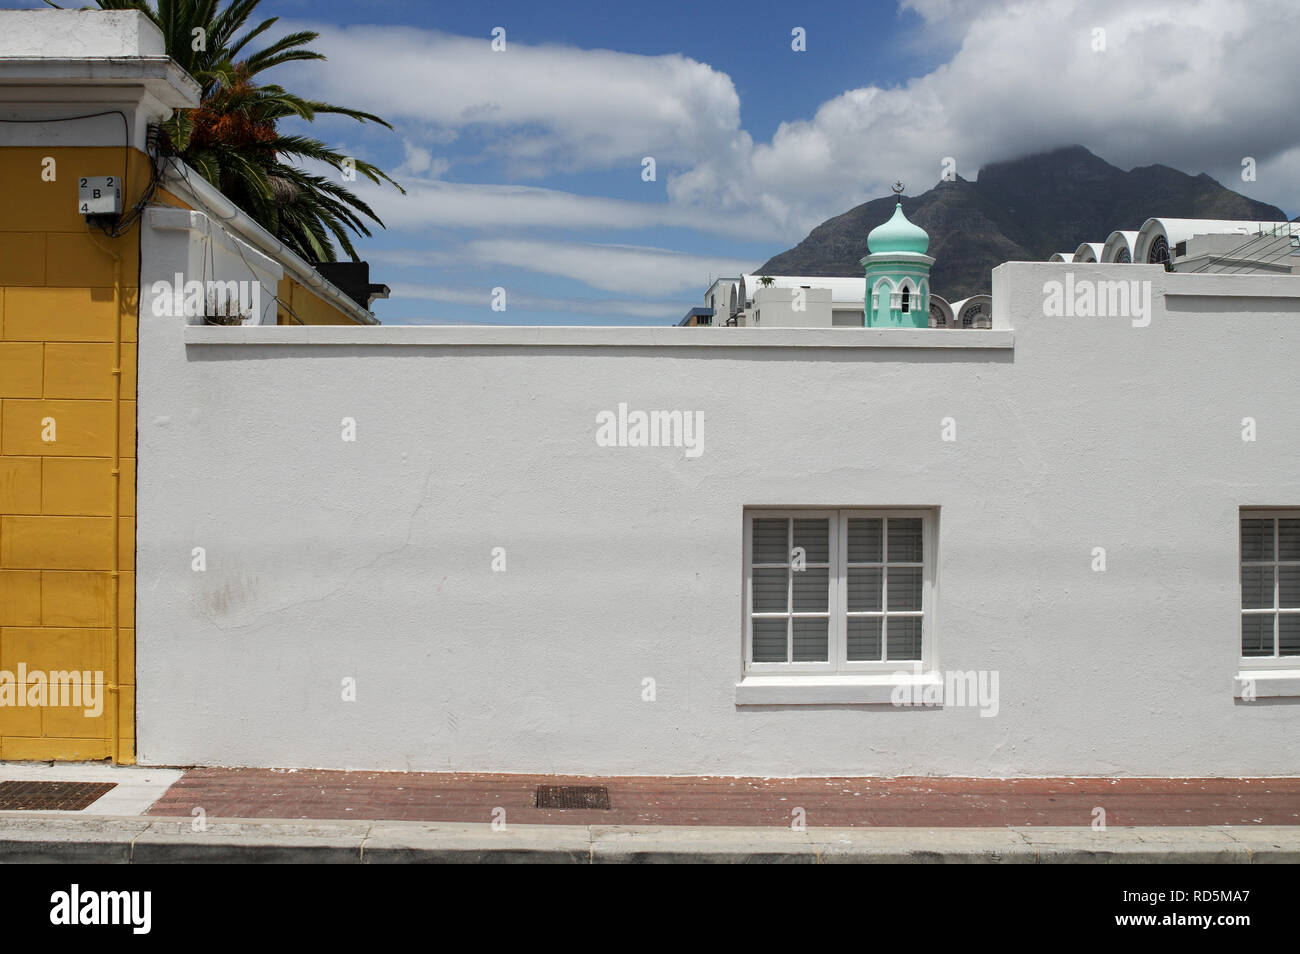 Quartier de Malay Bo-Kaap colorés (quartier) à Cape Town, Afrique du Sud Banque D'Images